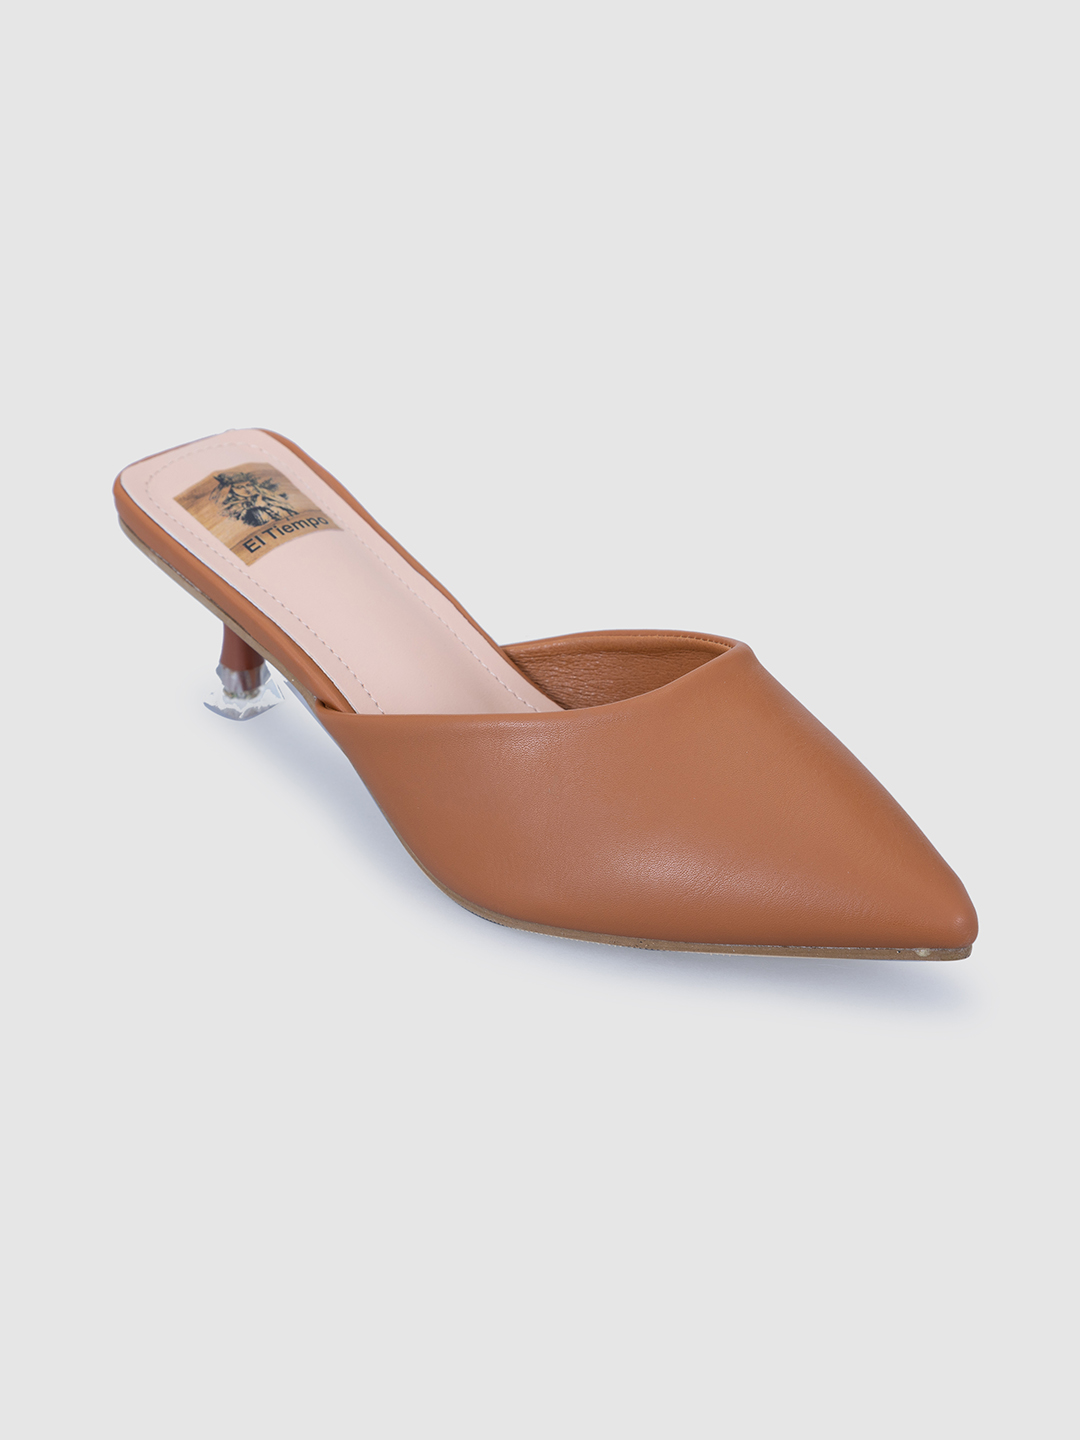 Rhinestone Beige Tan-Go Heels Suede heels beige Crystal adjustable  post-stud ankle strap Covered platform midsole block heels - AliExpress